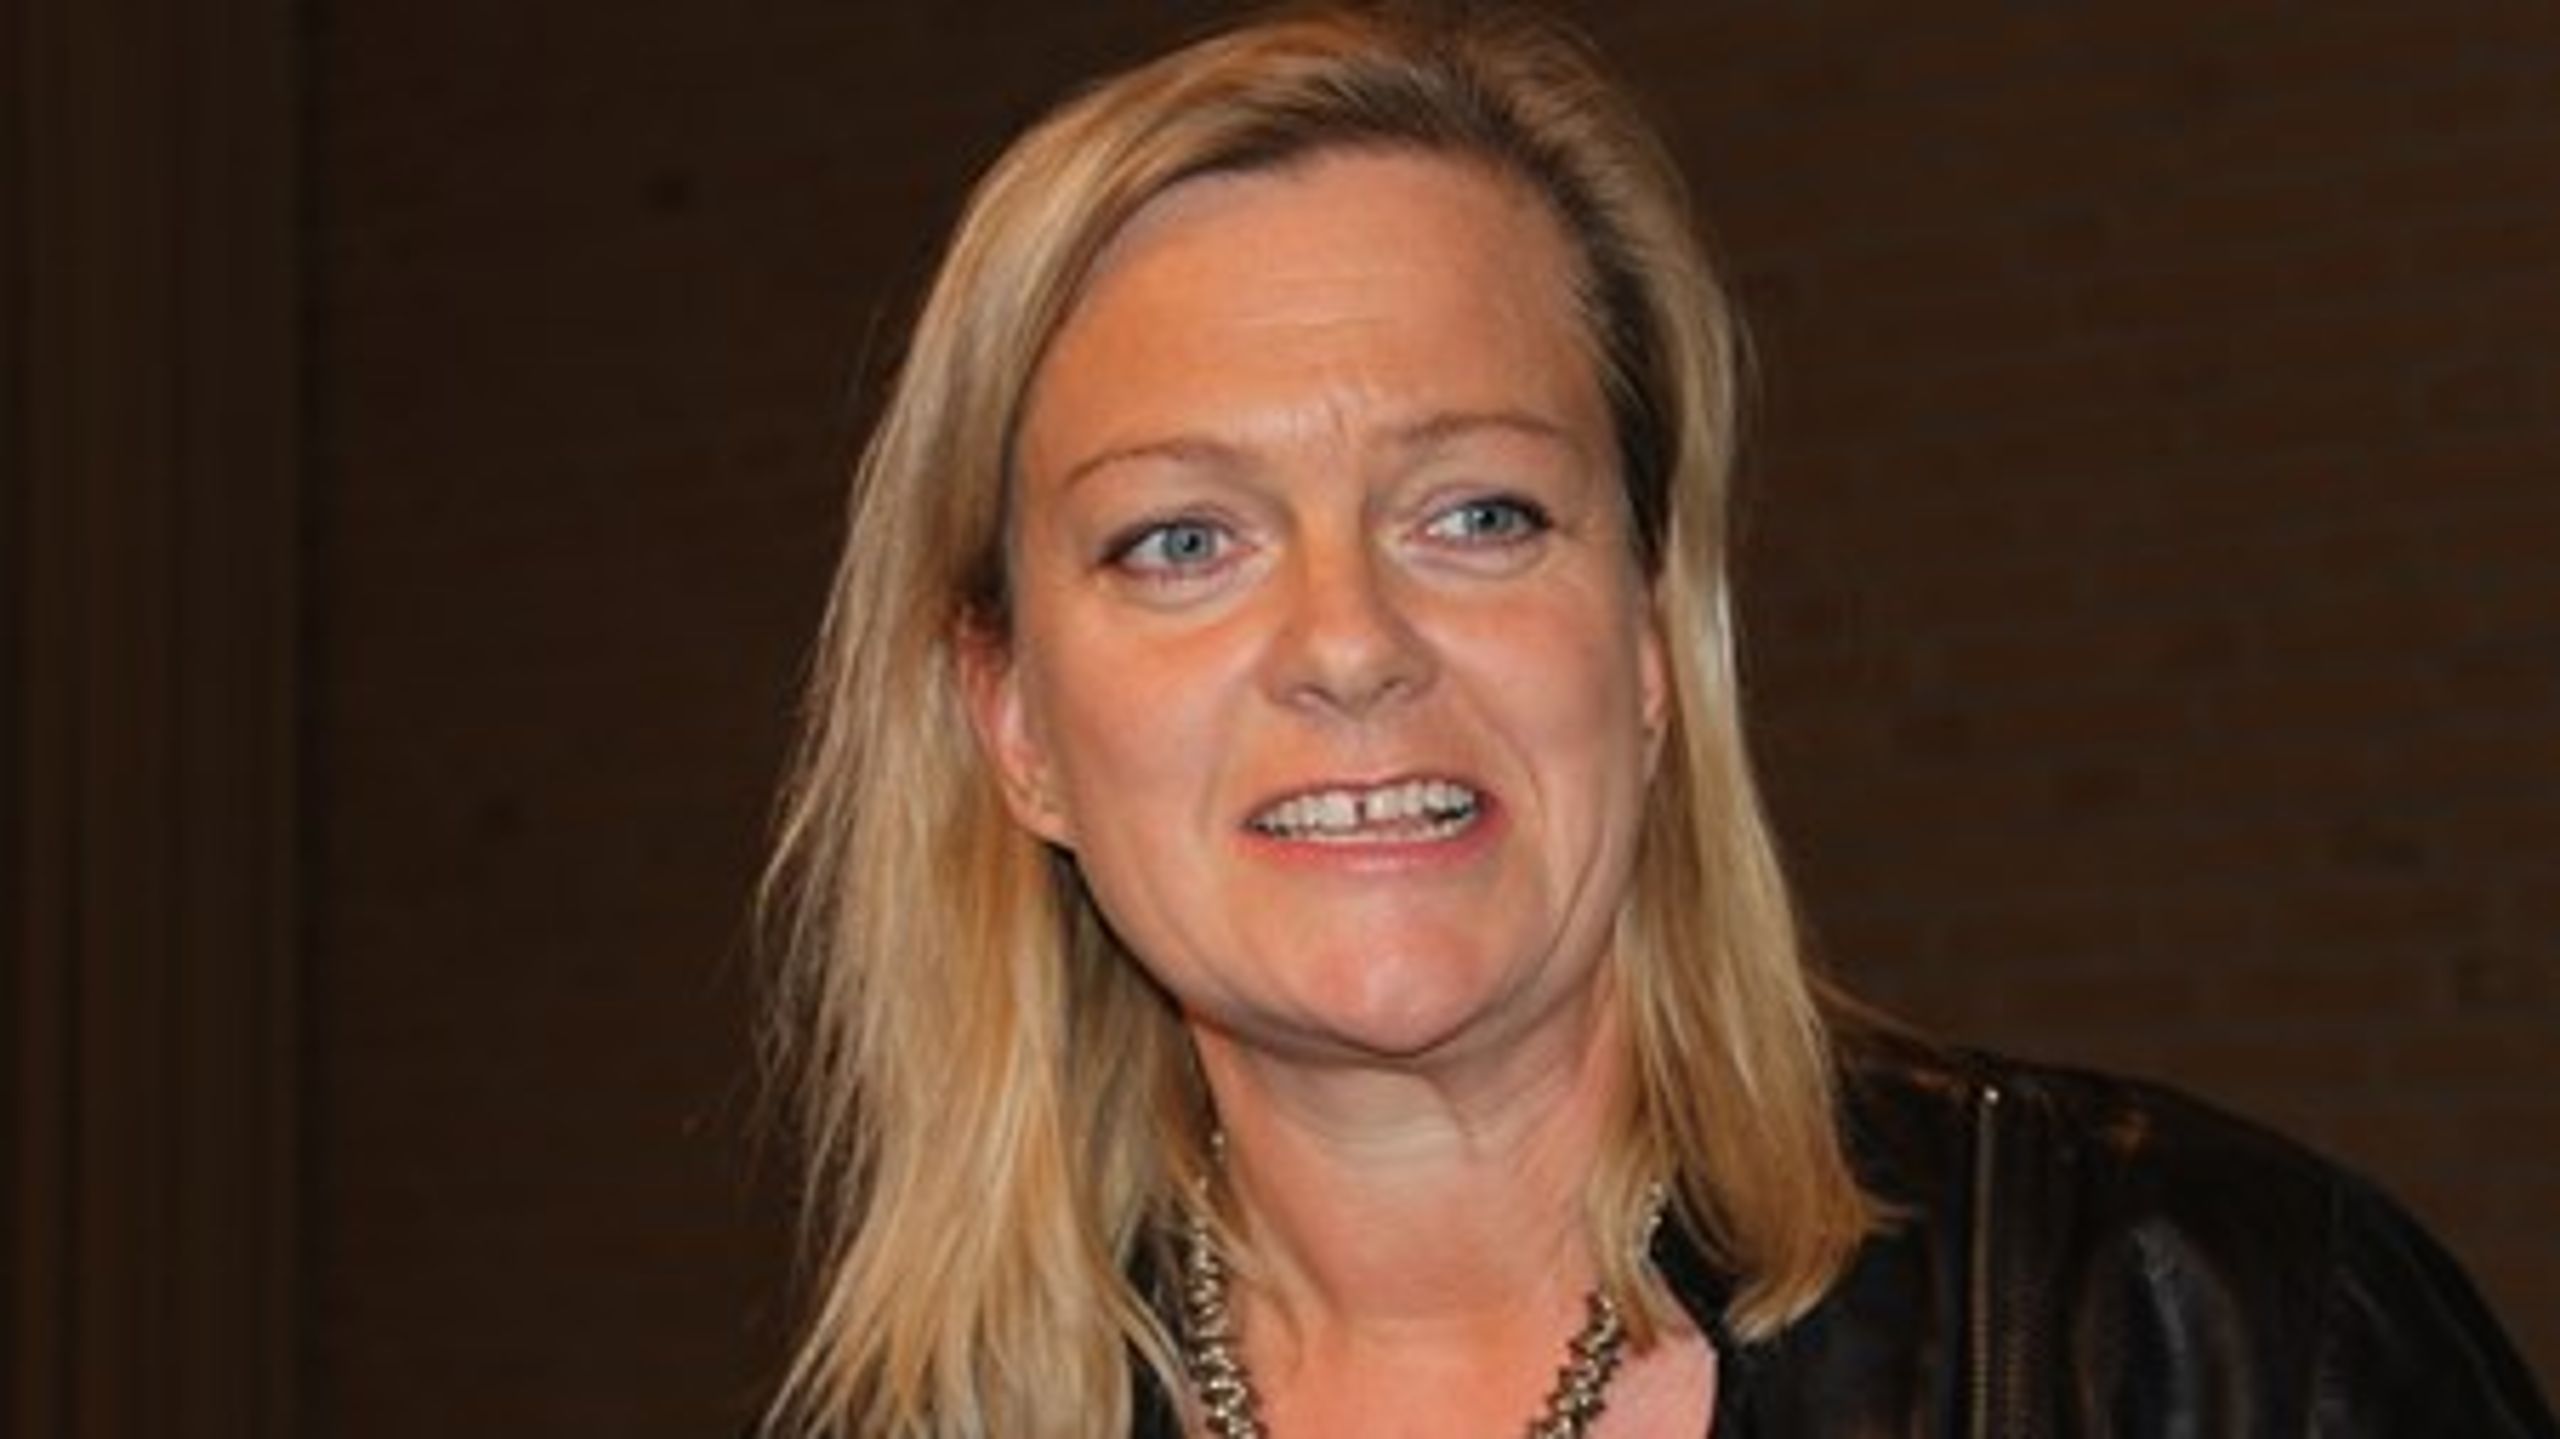 Formand for Lejernes Landsorganisation Helene Toxværd ser kun én vej til et trygt boligmarked med betalelige boliger, og den går gennem regulering.